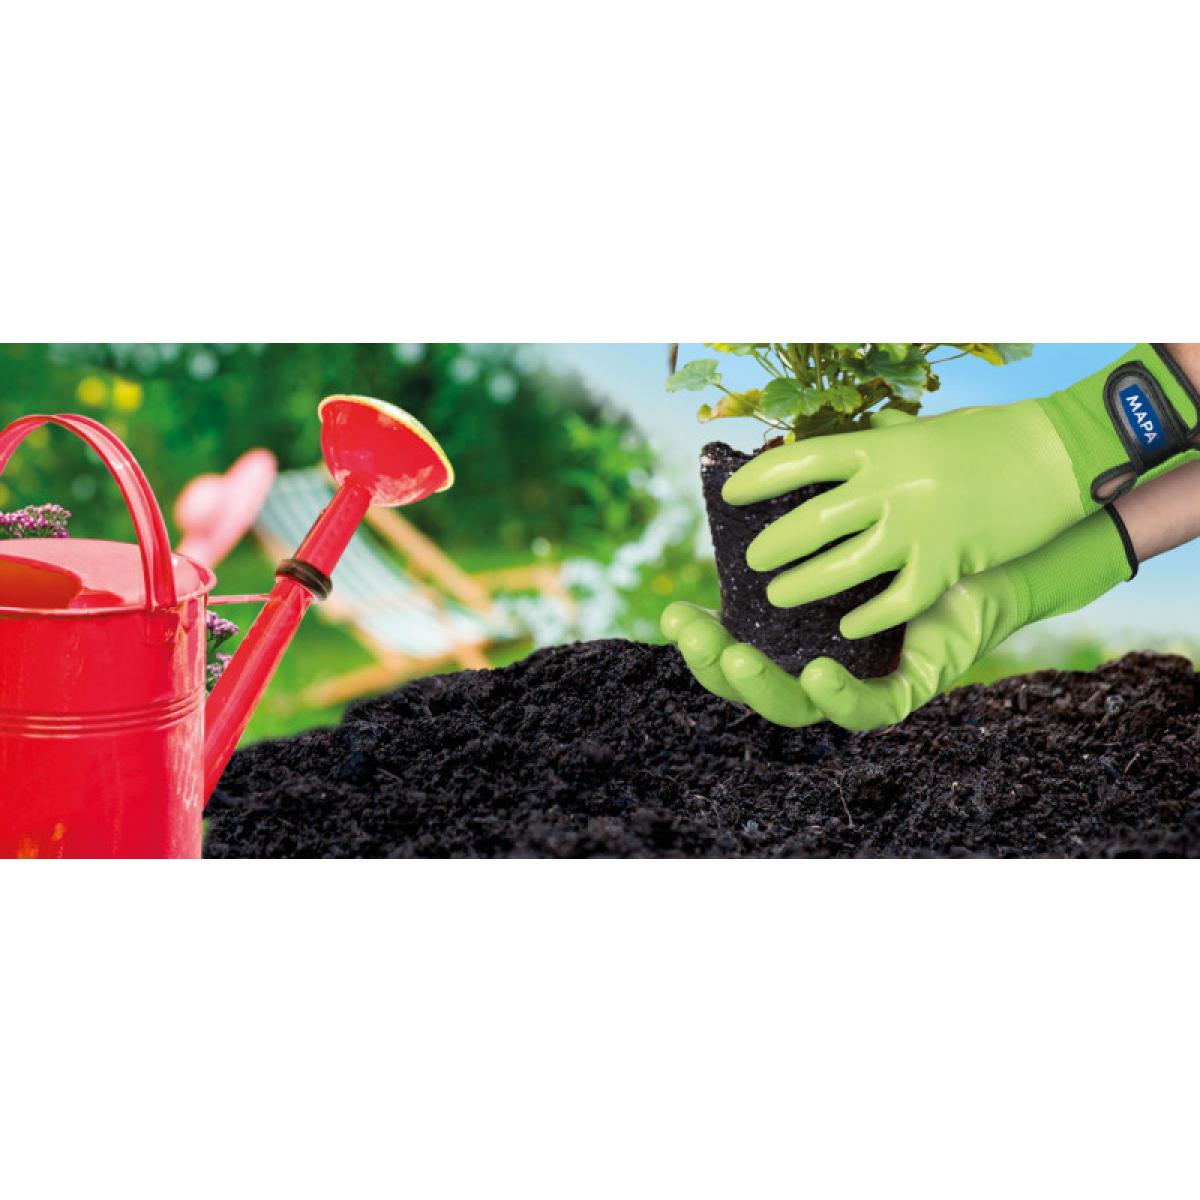 Gants jardinage - Outils de jardinage : gants, arrosoirs et